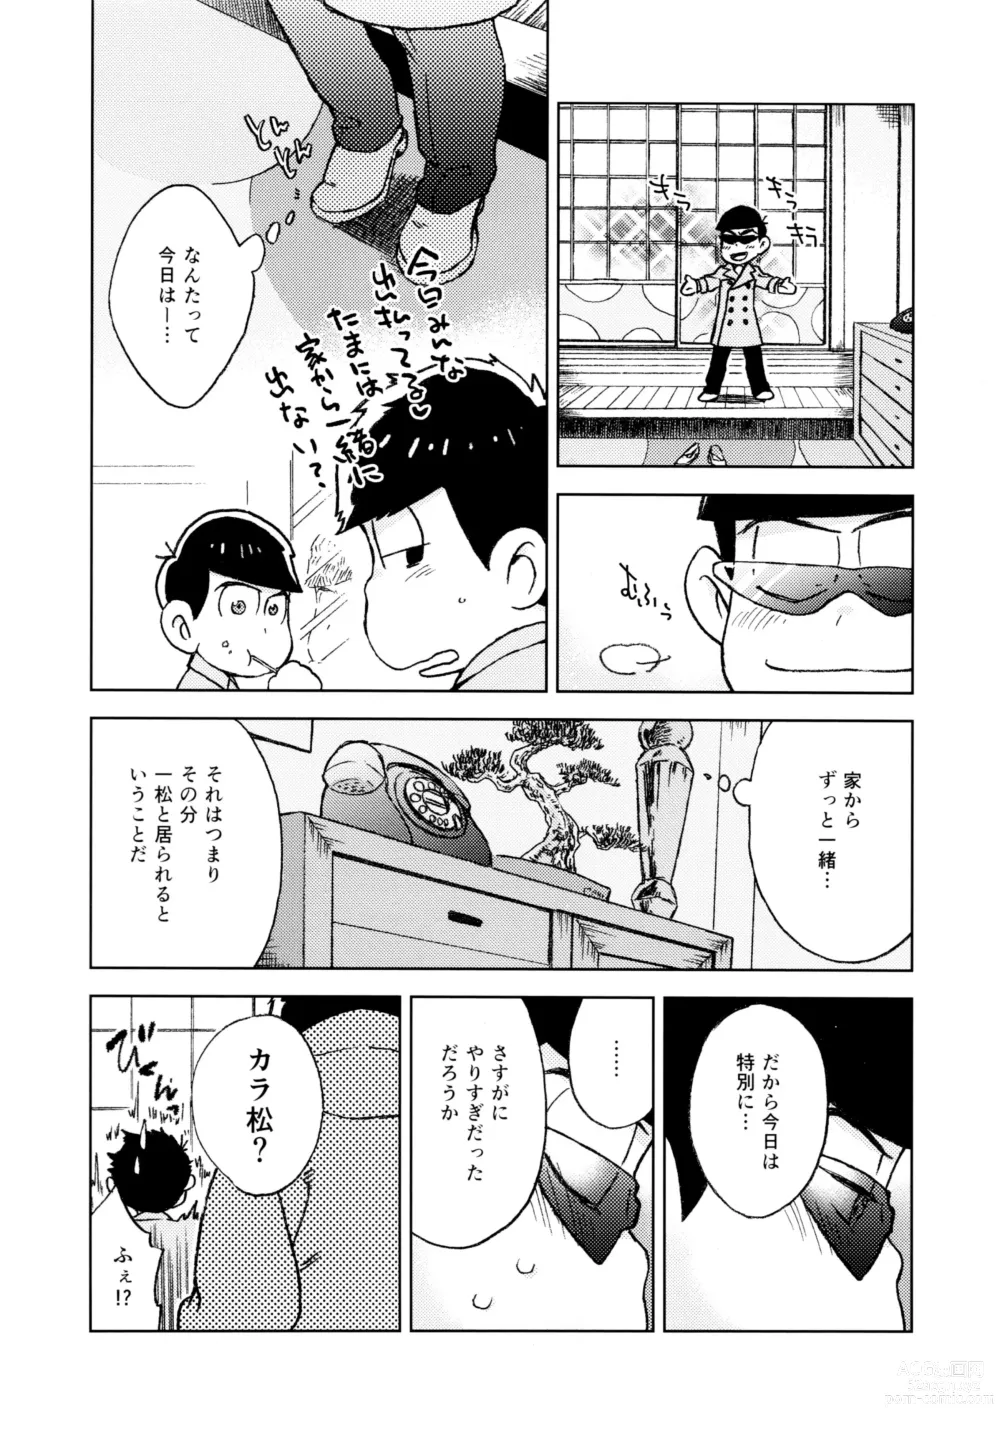 Page 6 of doujinshi Konna Chiisana Rakuen ni